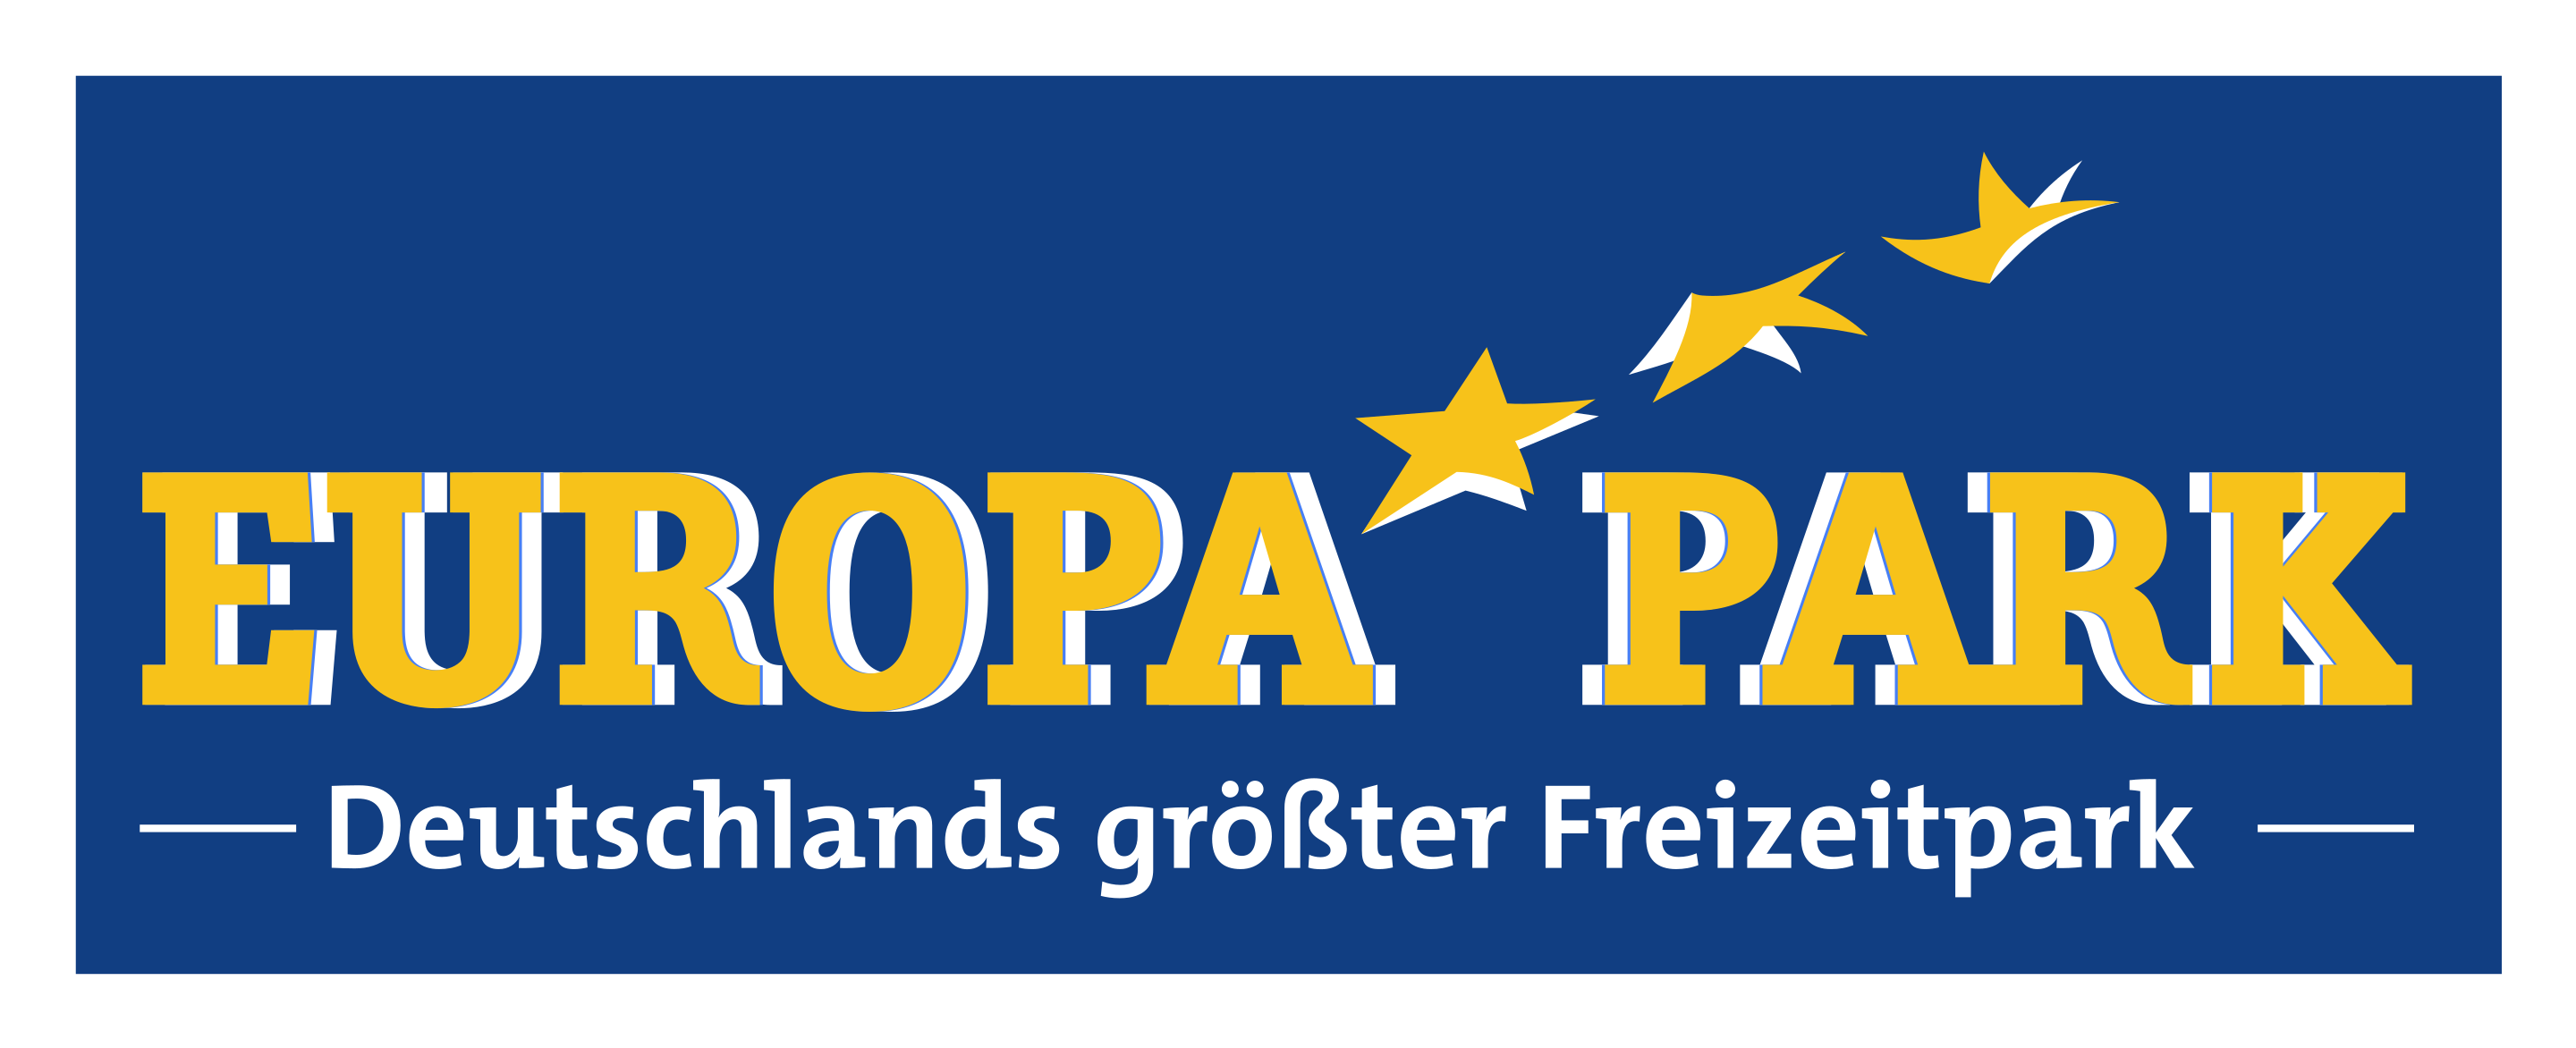 europapark-logo